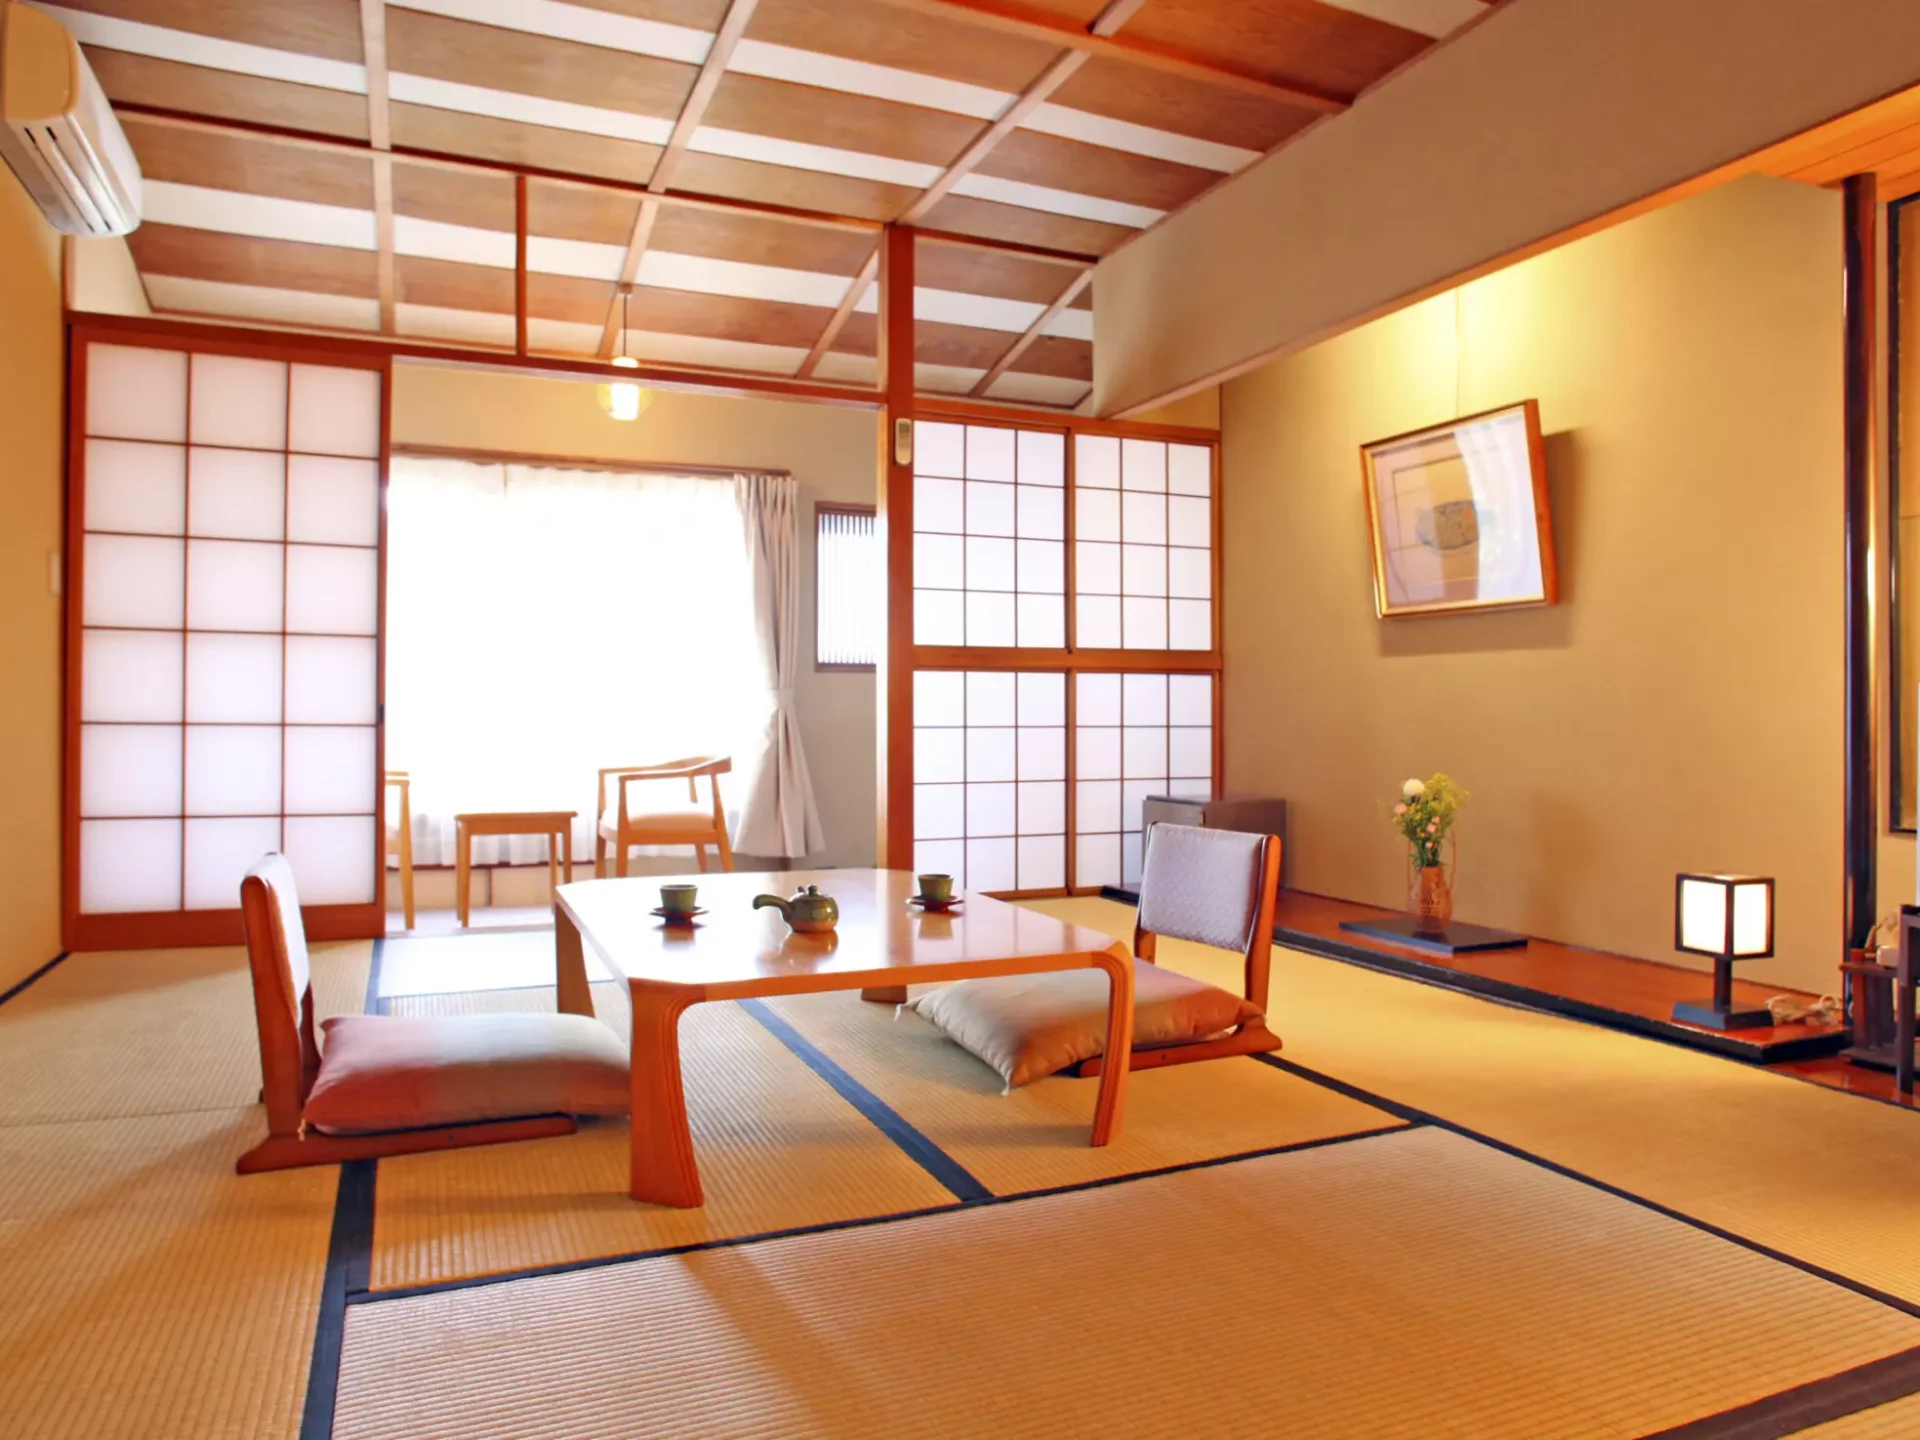 Ryokan-Zimmer im japanischen Stil